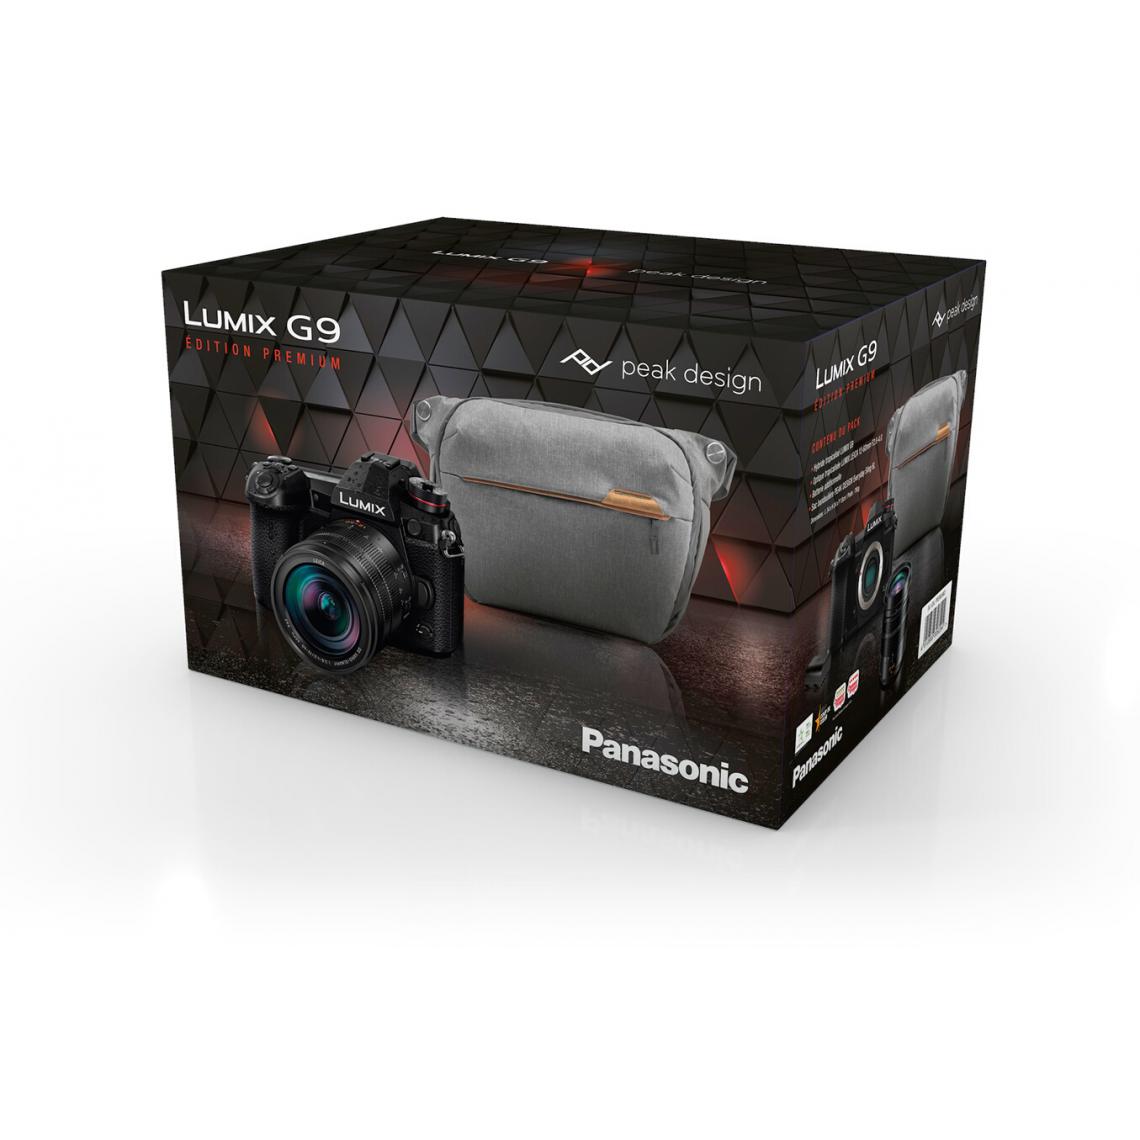 Panasonic - Rasage Electrique - Pack Lumix G9 Noir + Leica DG Vario Elmarit 12-60mm f/2,8-4 + Sac Peak Design Everyday Sling 6L + 2ème batterie - Appareil compact